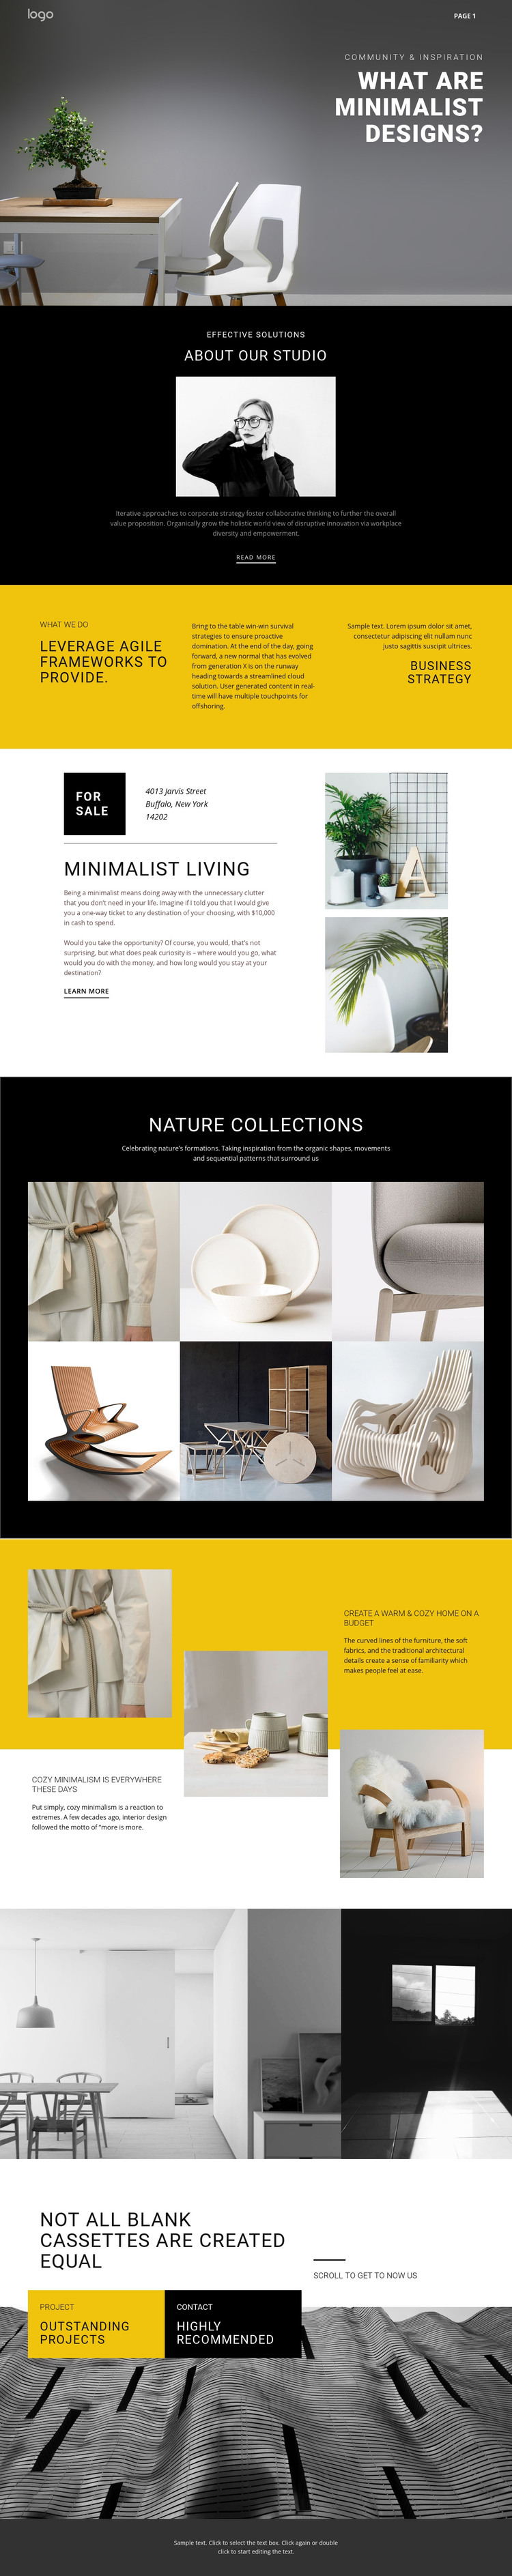 Minimalist designer interiors Homepage Design